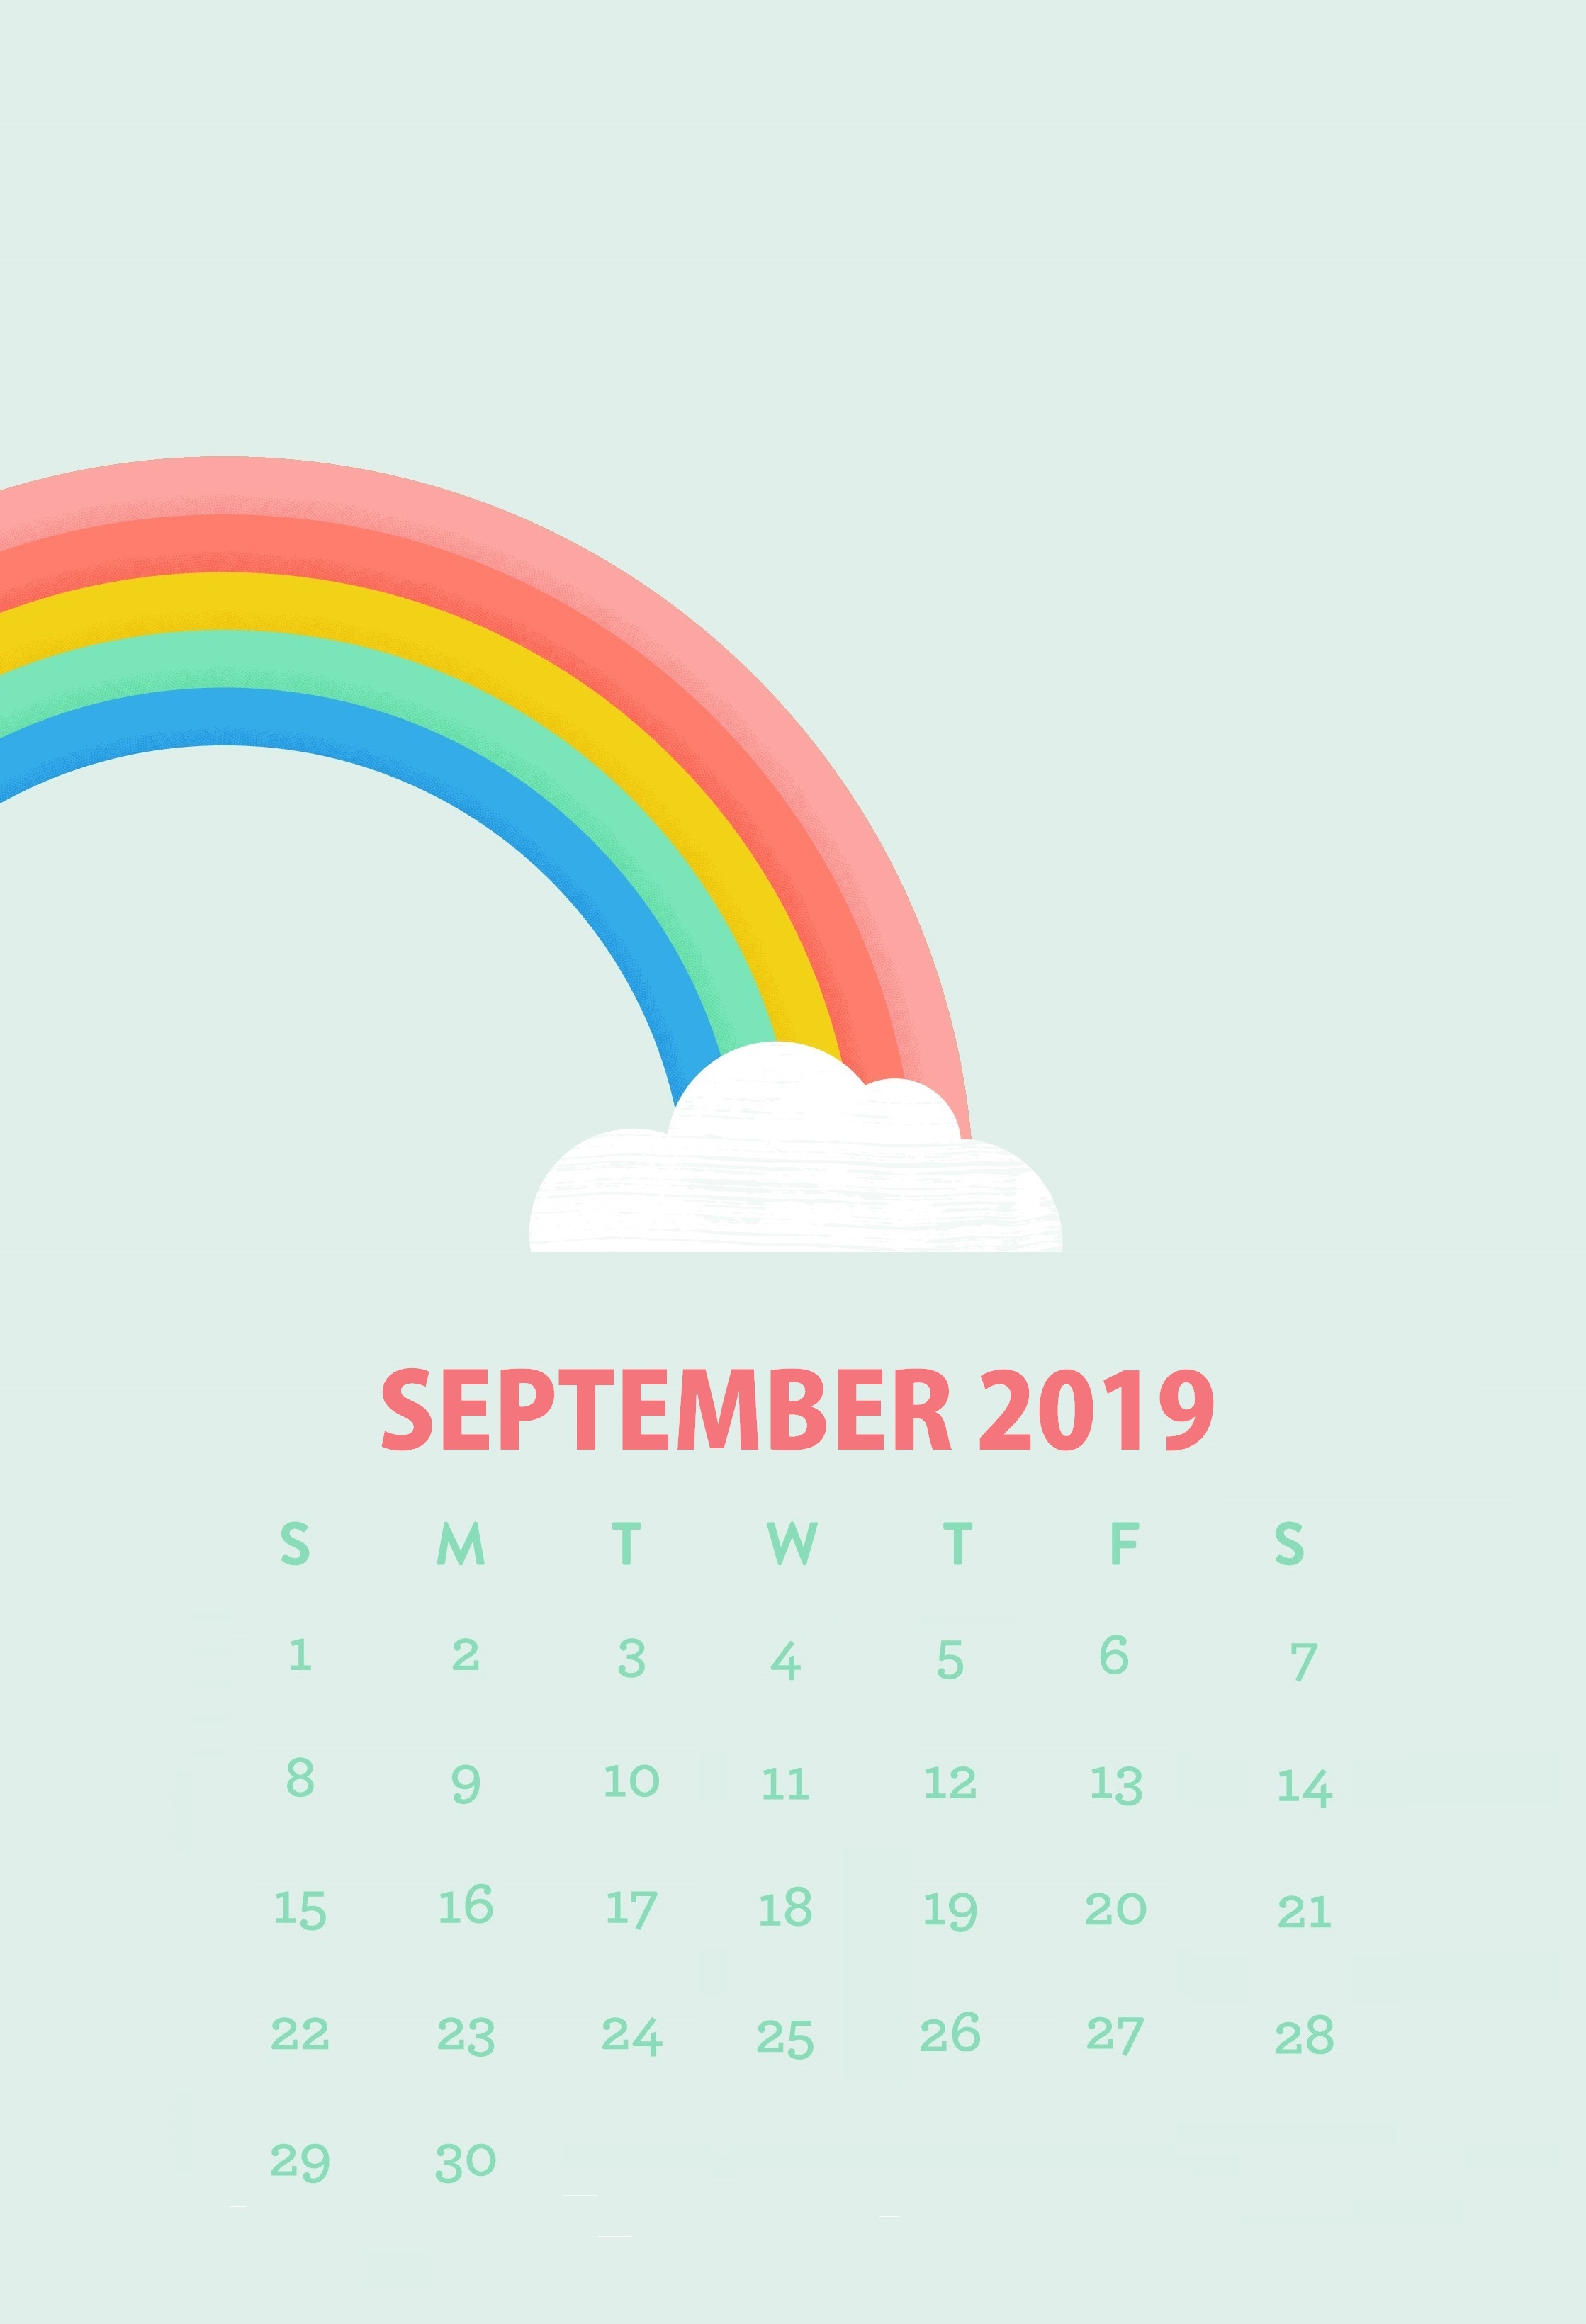 iPhone September Calendar Wallpaper Max Calendars